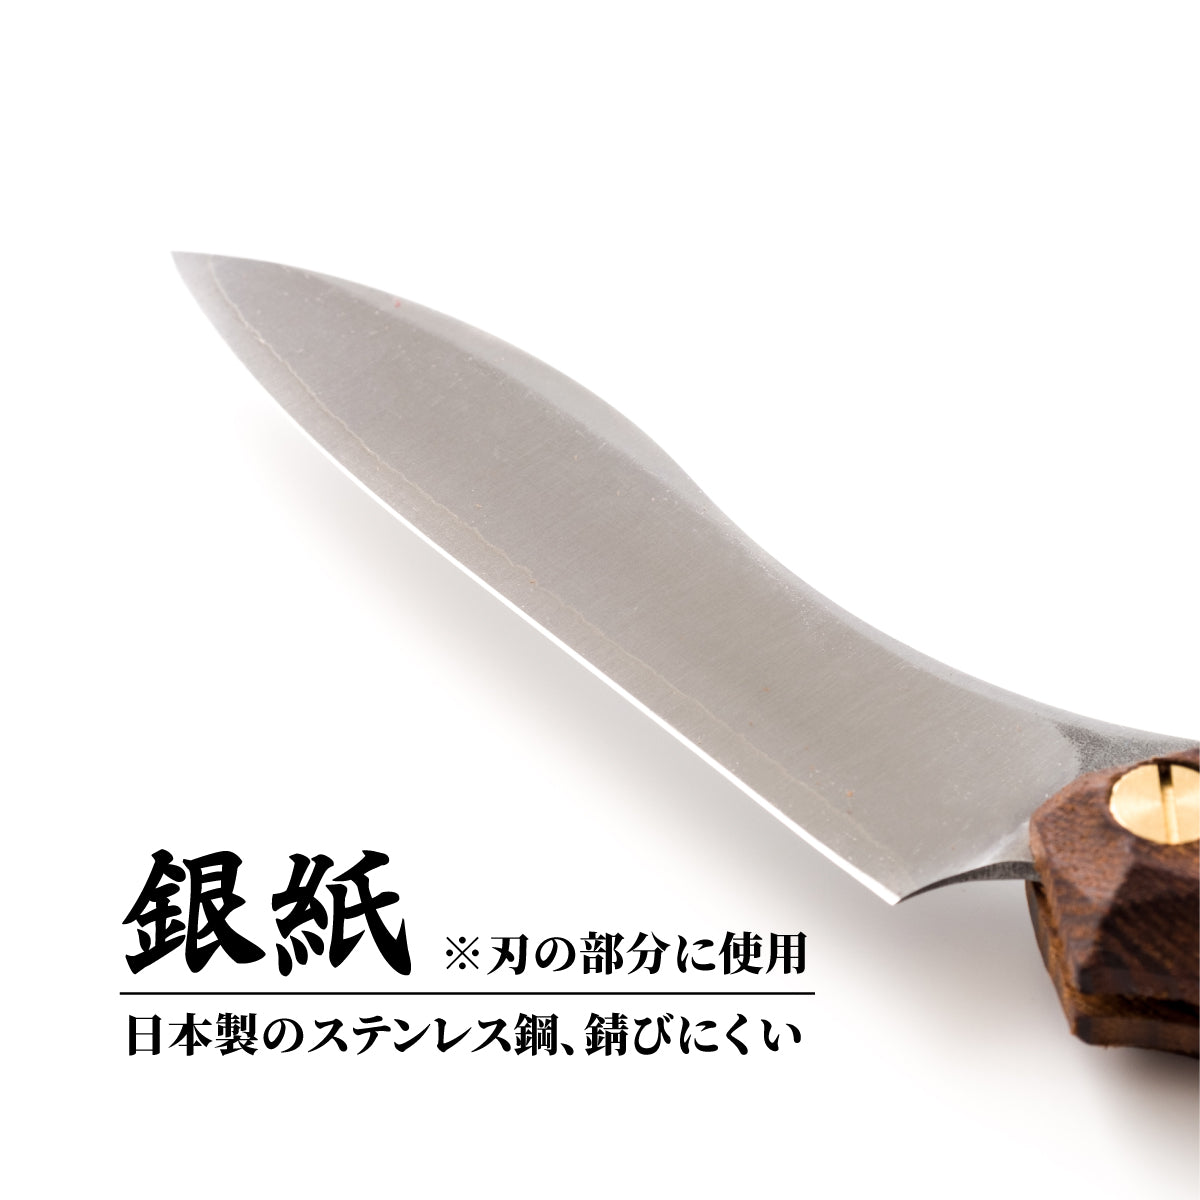 FEDECA 折畳式料理ナイフ ブラック (ステンレス鋼/銀紙三号)